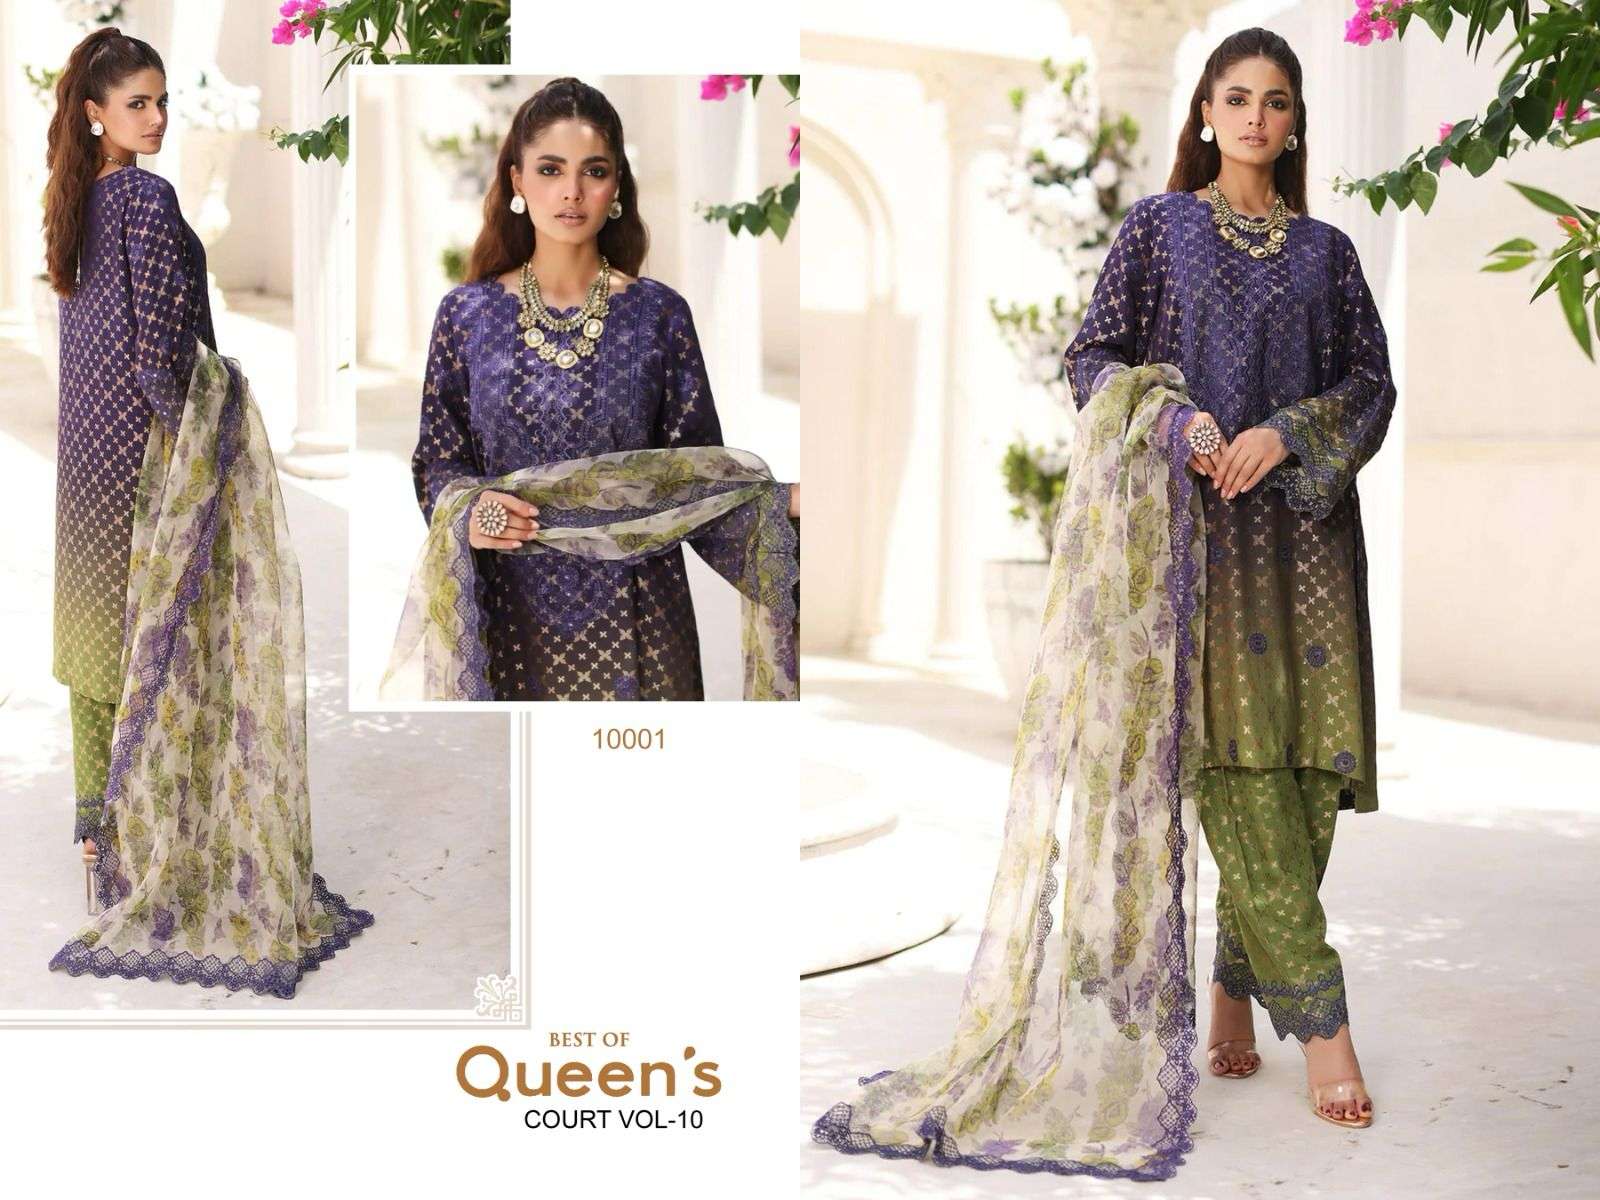 Hazzel Queens Court Vol 10 Chiffon Dupatta Pakistani Suits Wholesale catalog